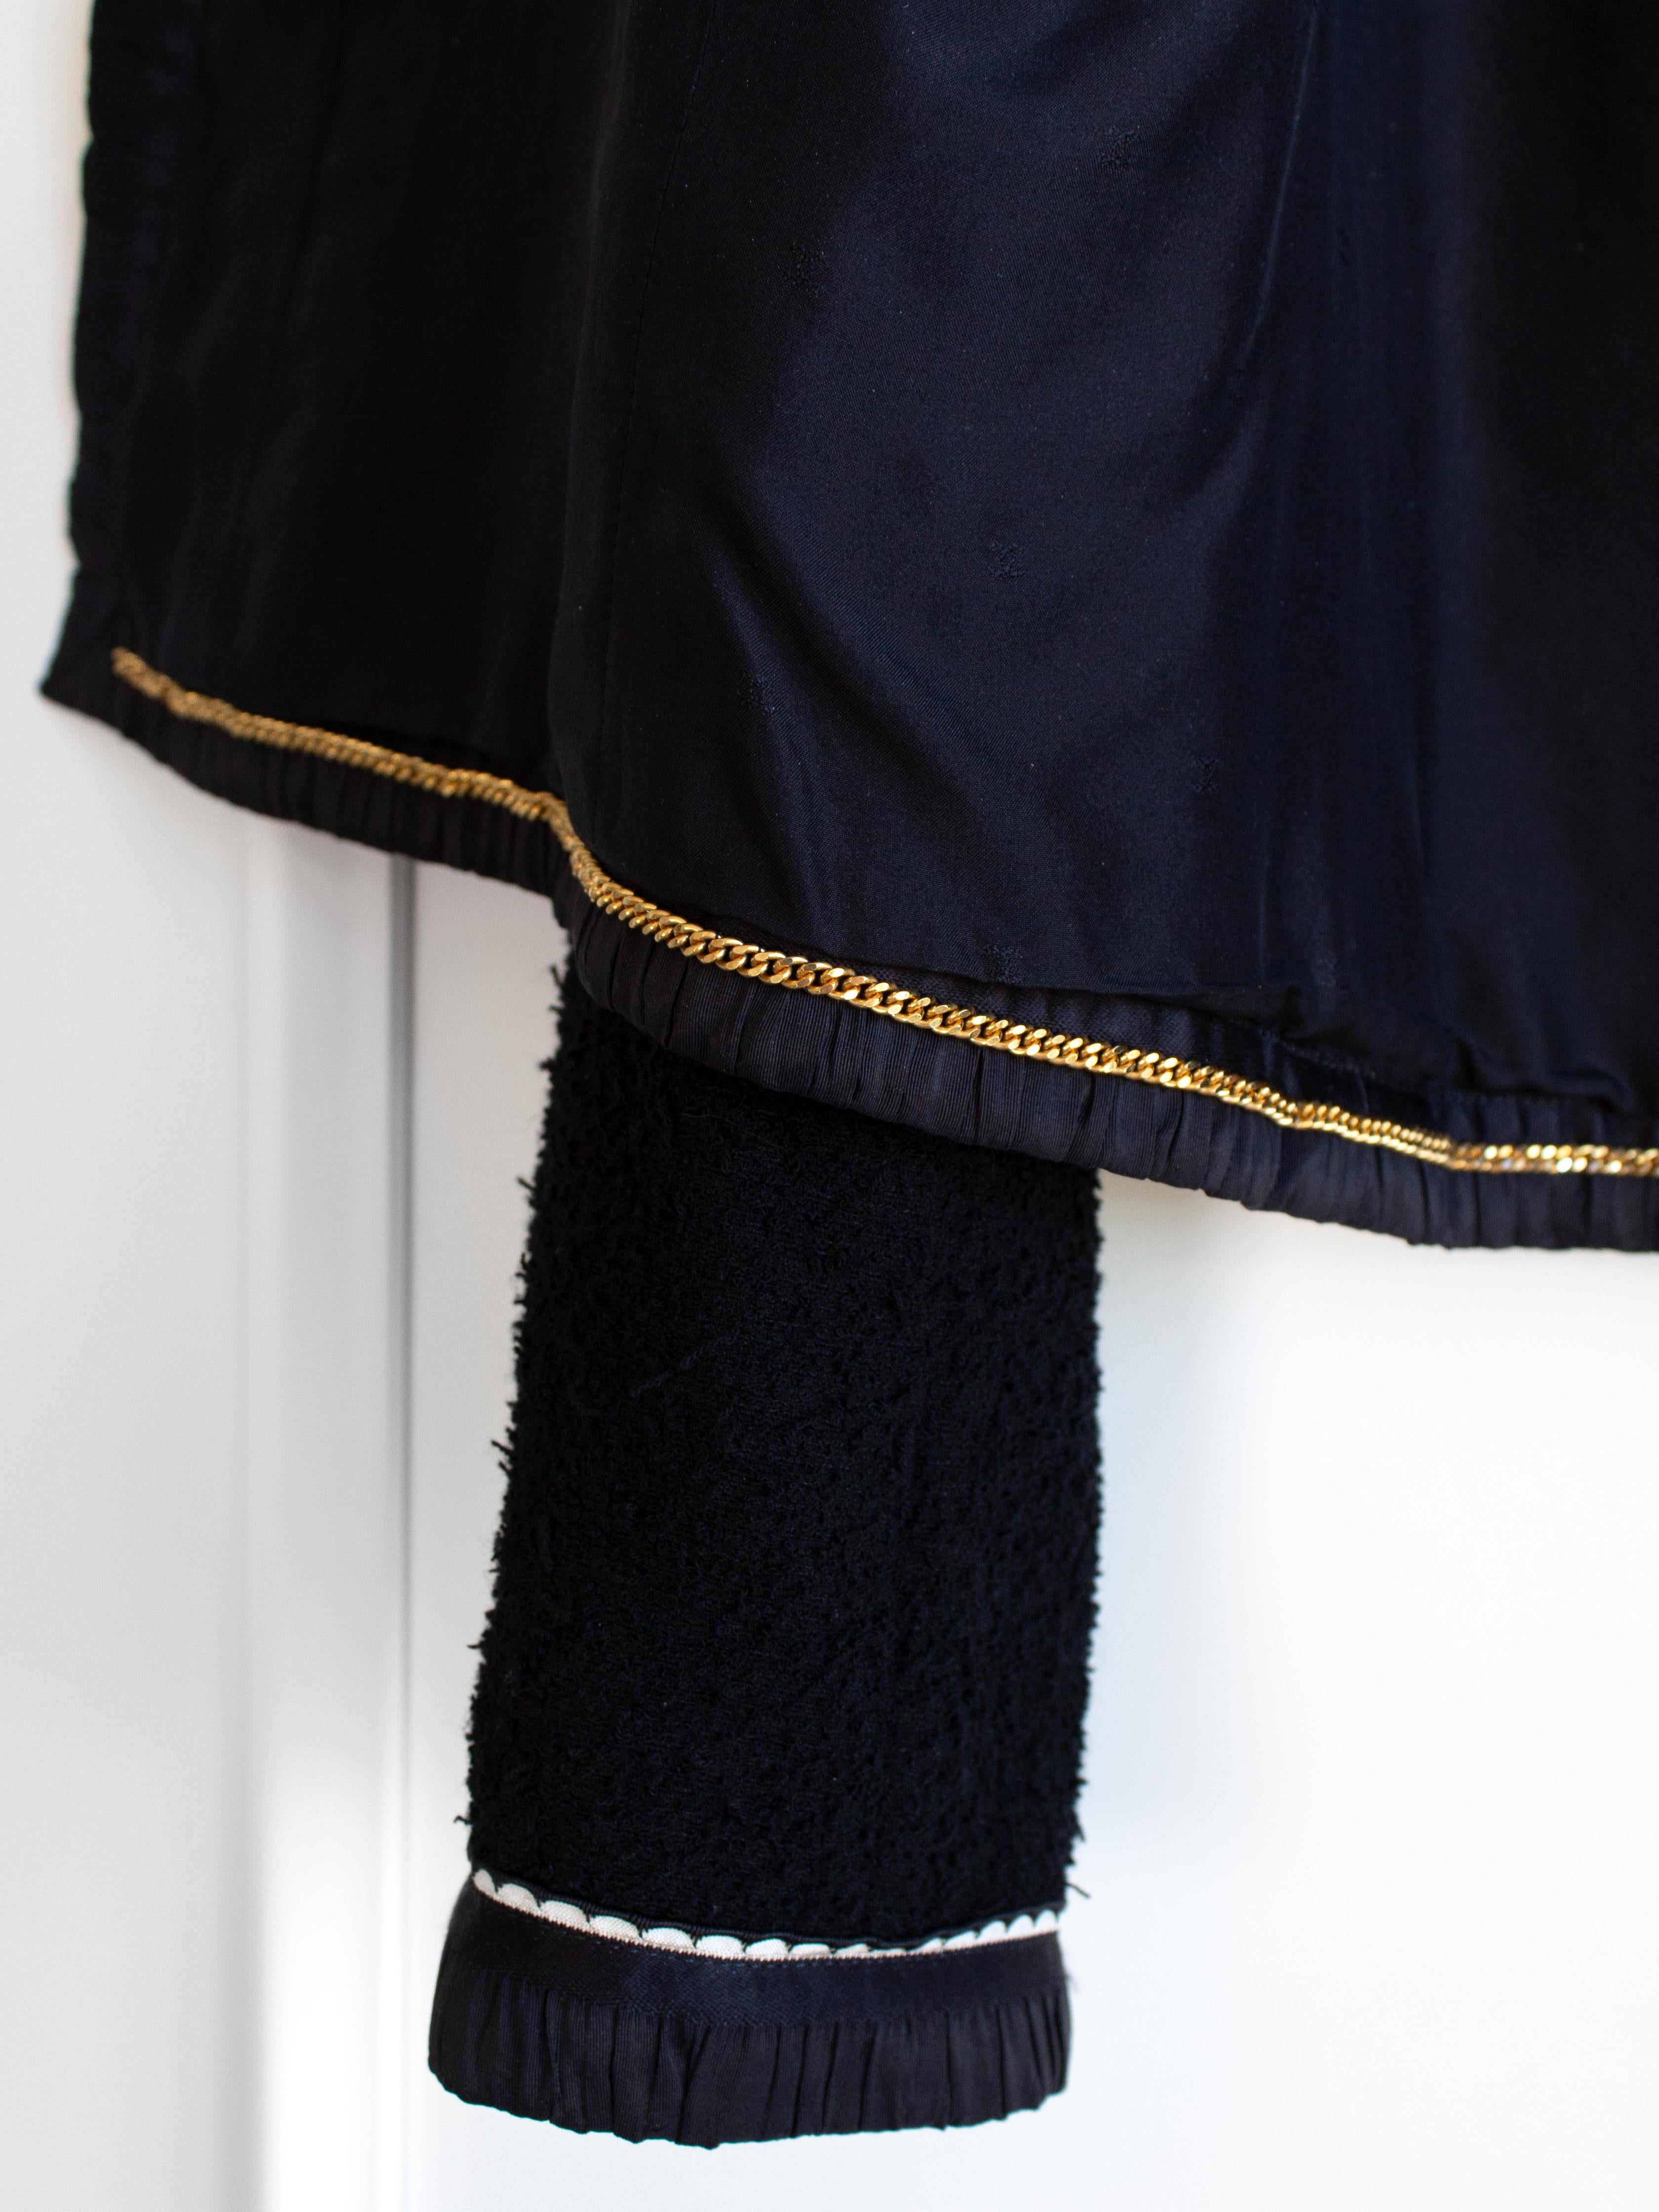 Tailleur jupe emblématique Chanel Vintage S/S1994 bleu marine et blanc bordé de bordures 94P 11